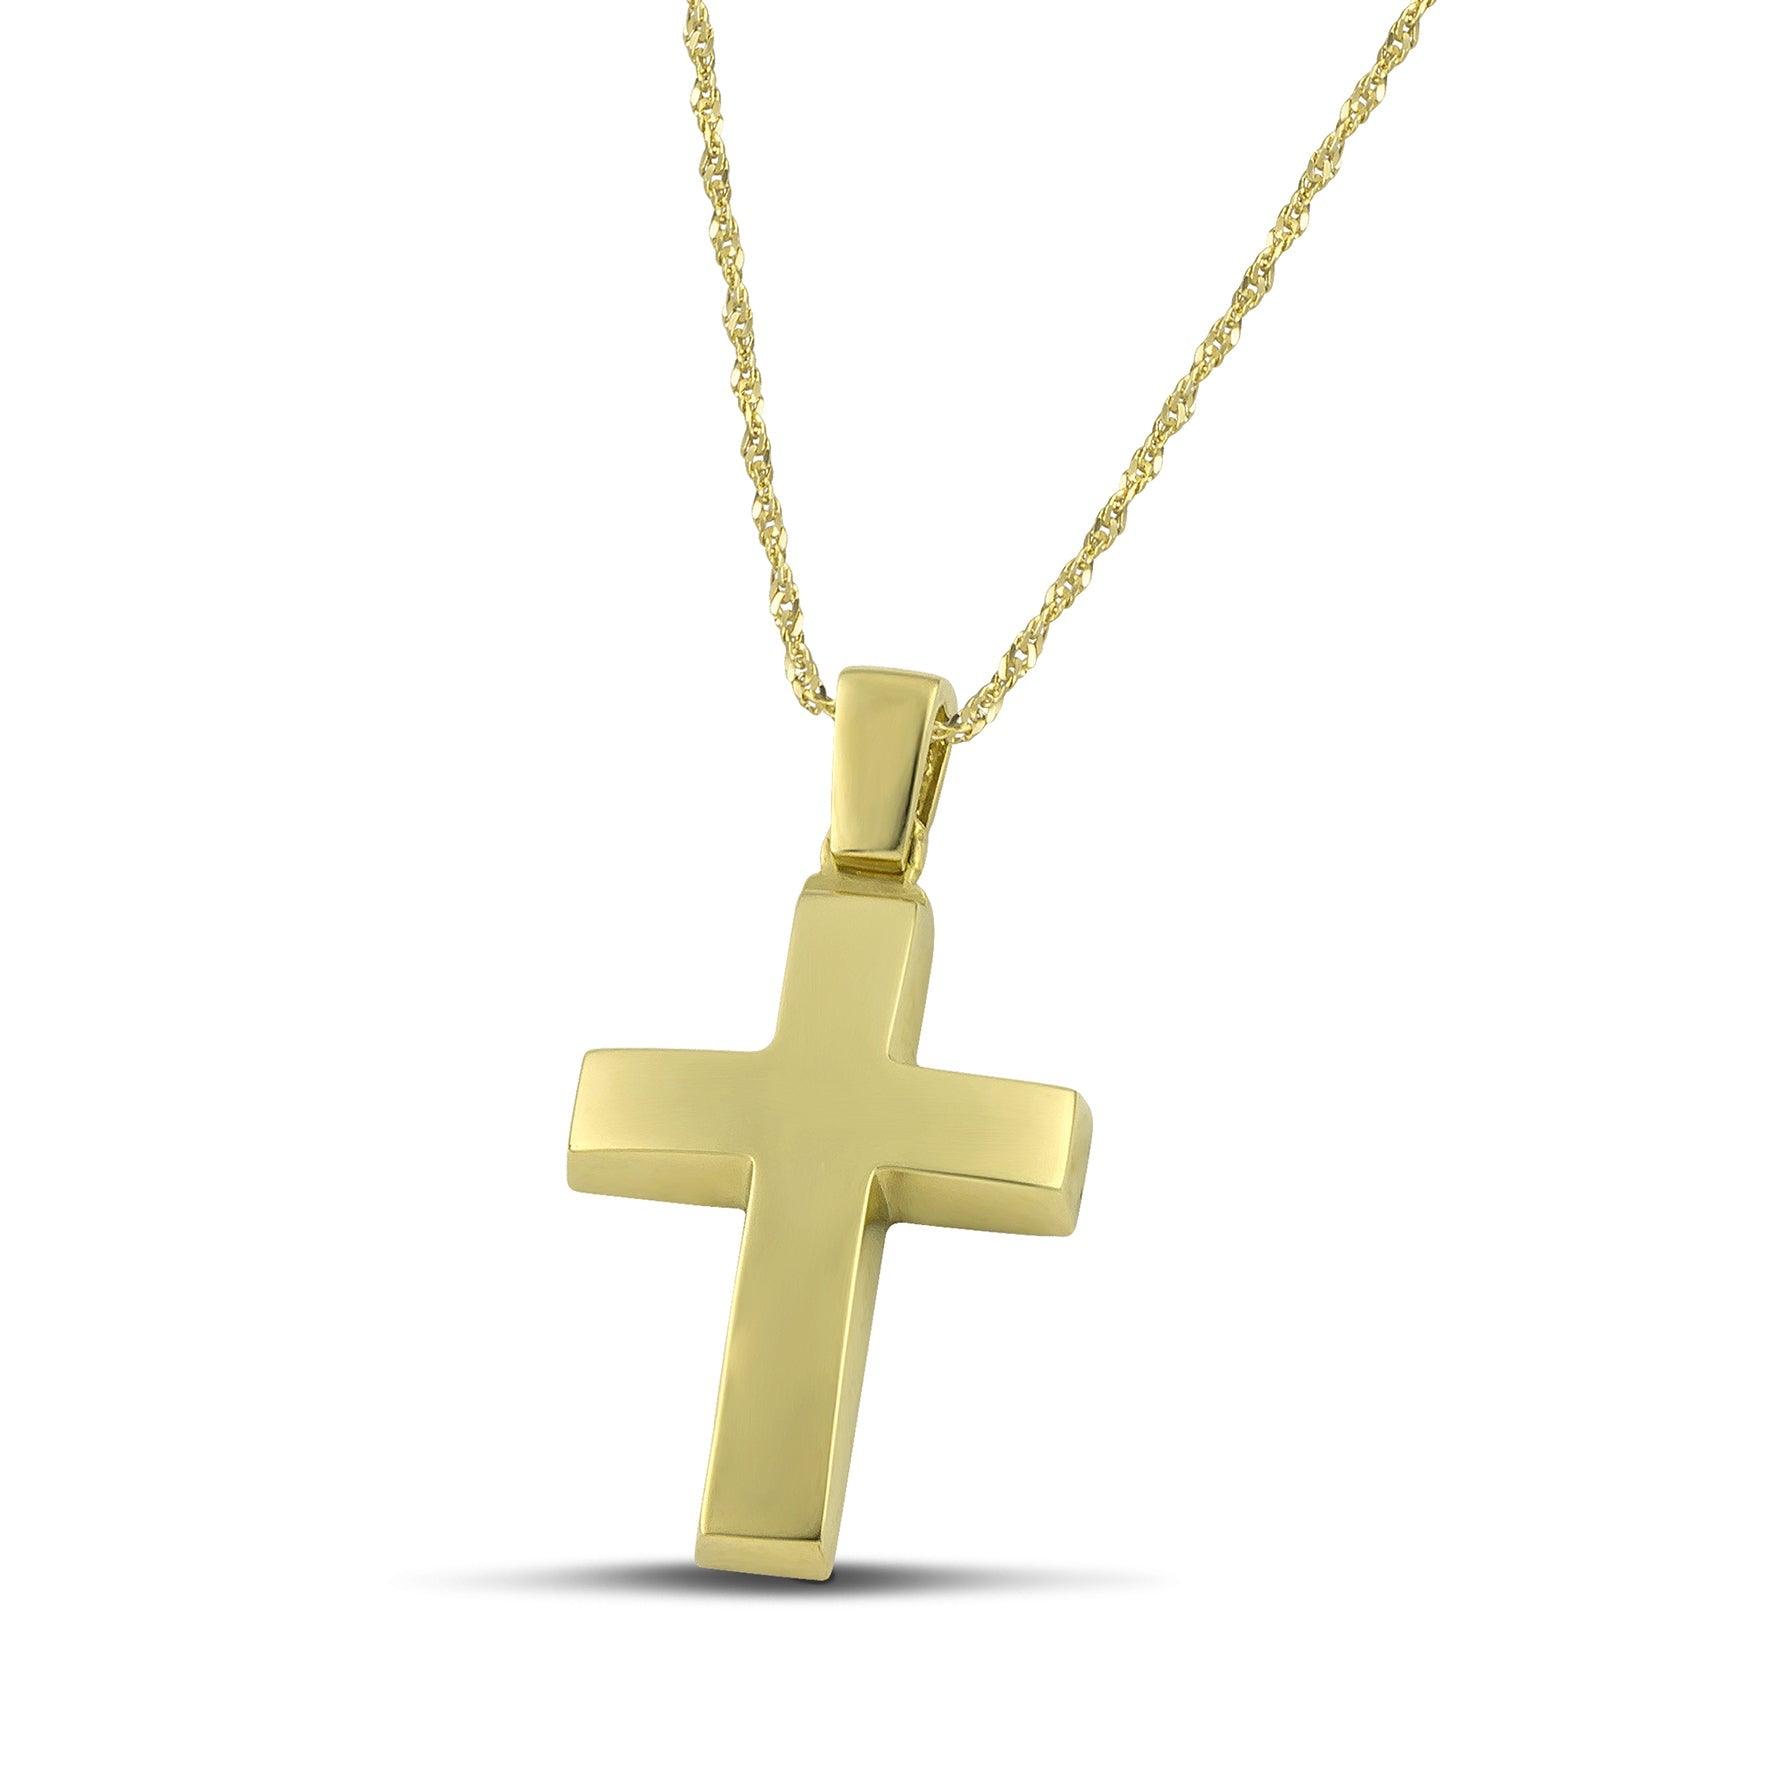 Ανδρικός σταυρός χρυσός Κ14, διπλής όψης, σε λεπτή, στριφτή  αλυσίδα.